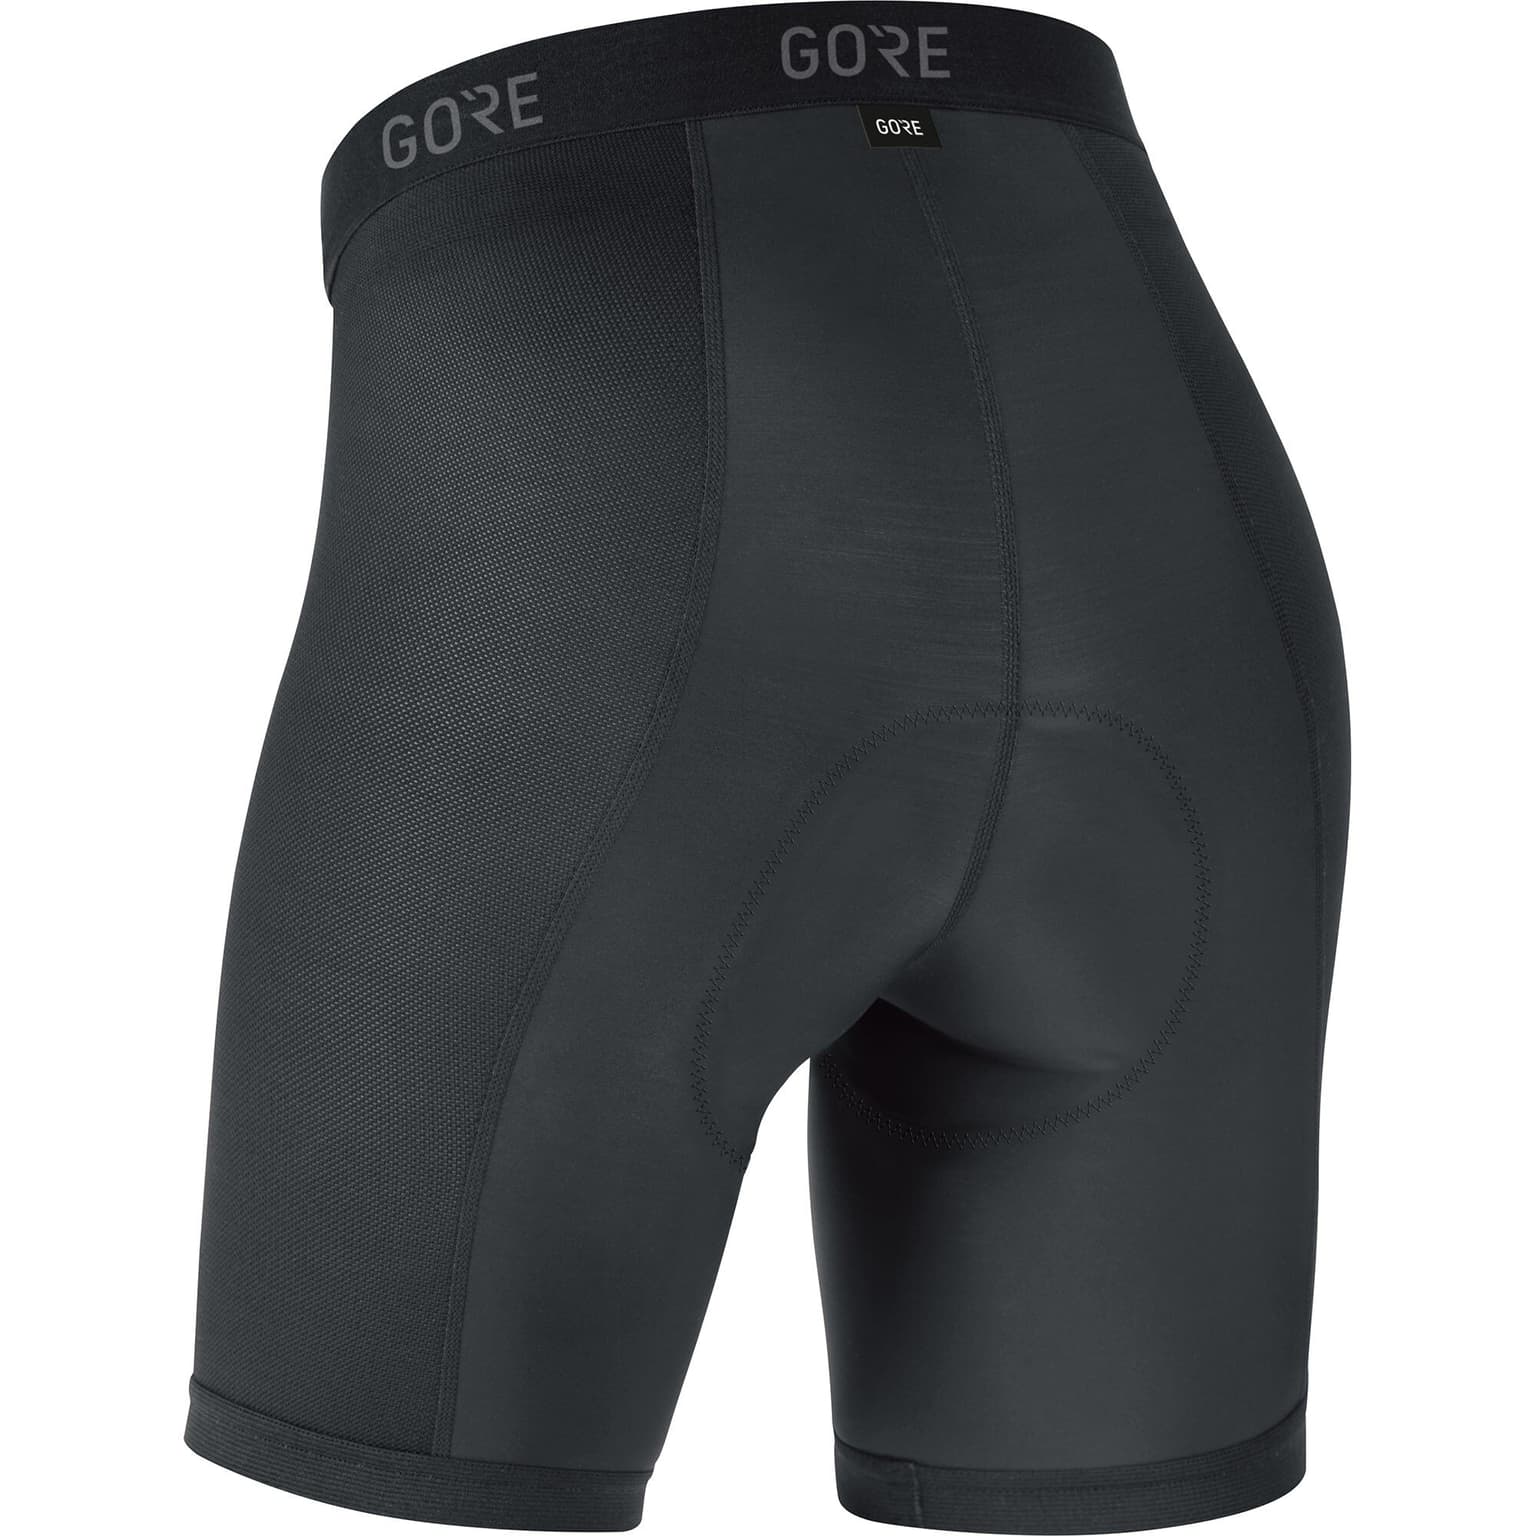 Gore Gore C3 Liner Short Tights+ Slip per ciclismo nero 2